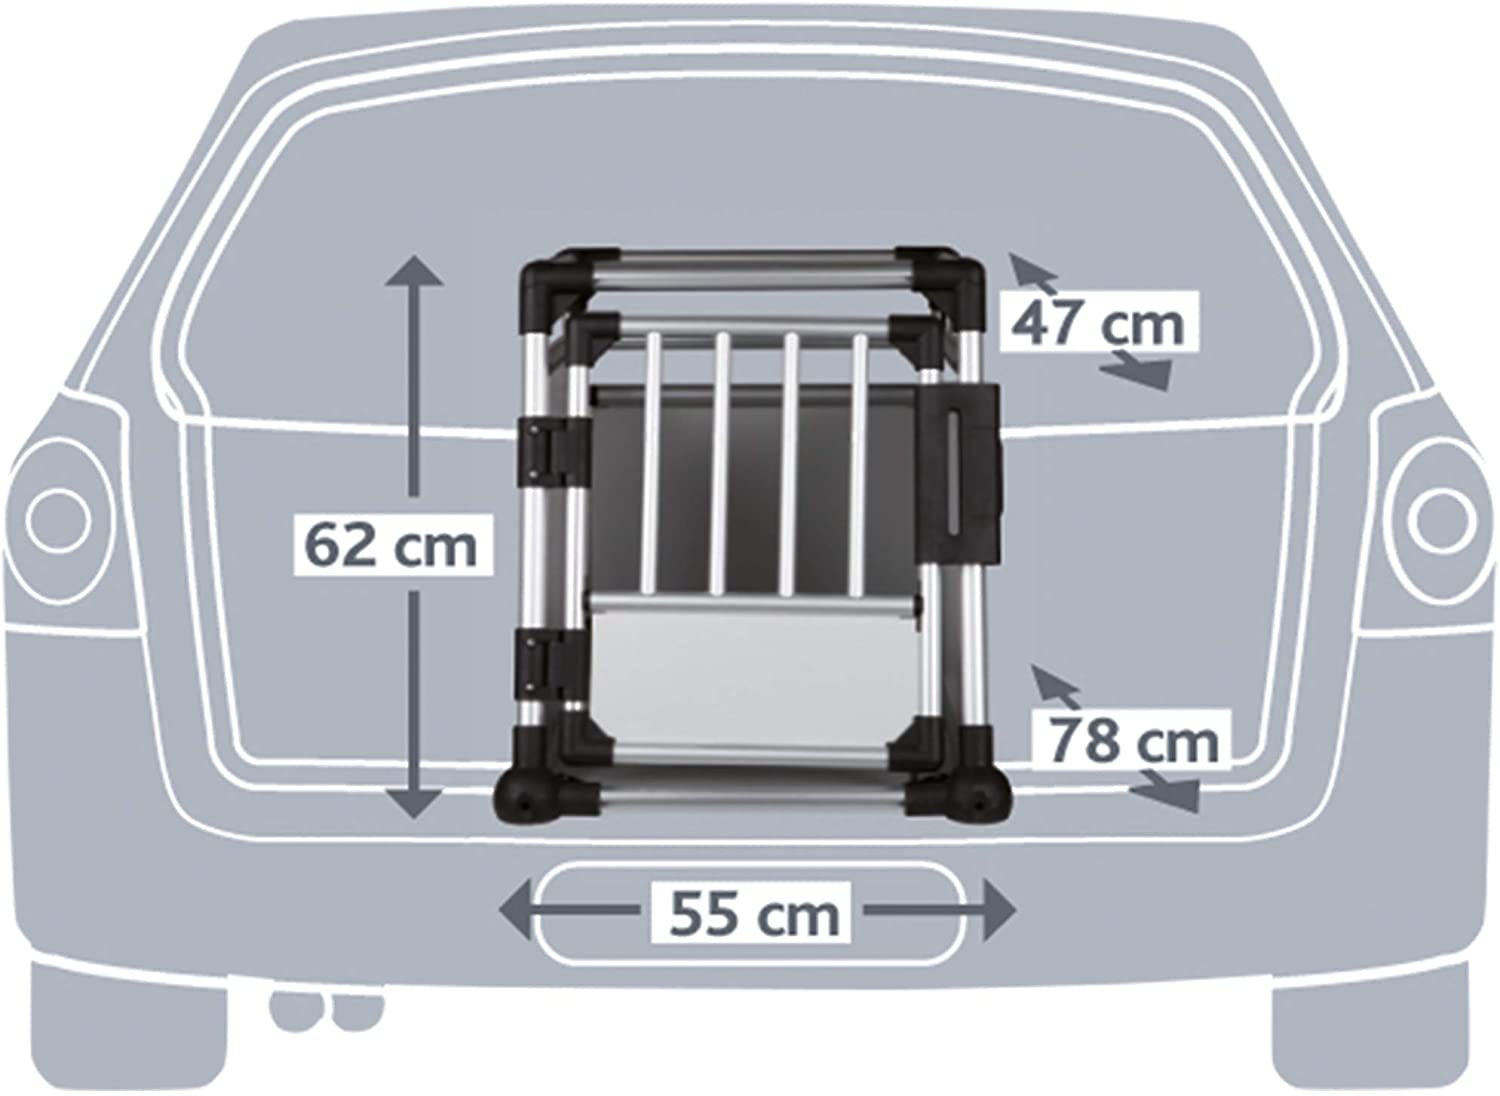  Trixie Jaula de Transporte Aluminio Transportín para el Coche Muy Estable, Ligero y Seguro - M (55 x 62 x 78 cm) 